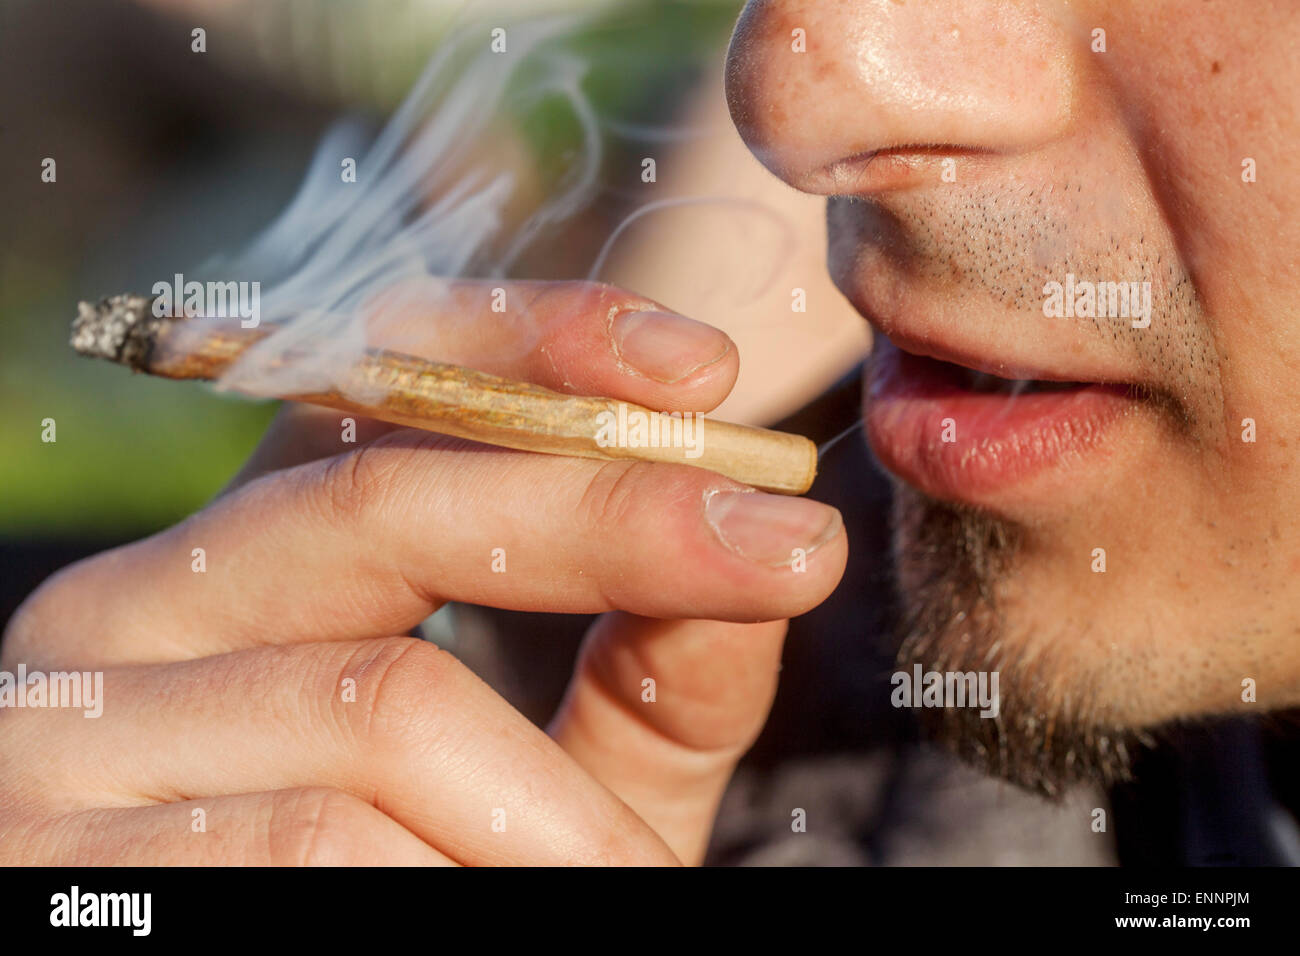 Close up young man smoking marijuana joint Stock Photo